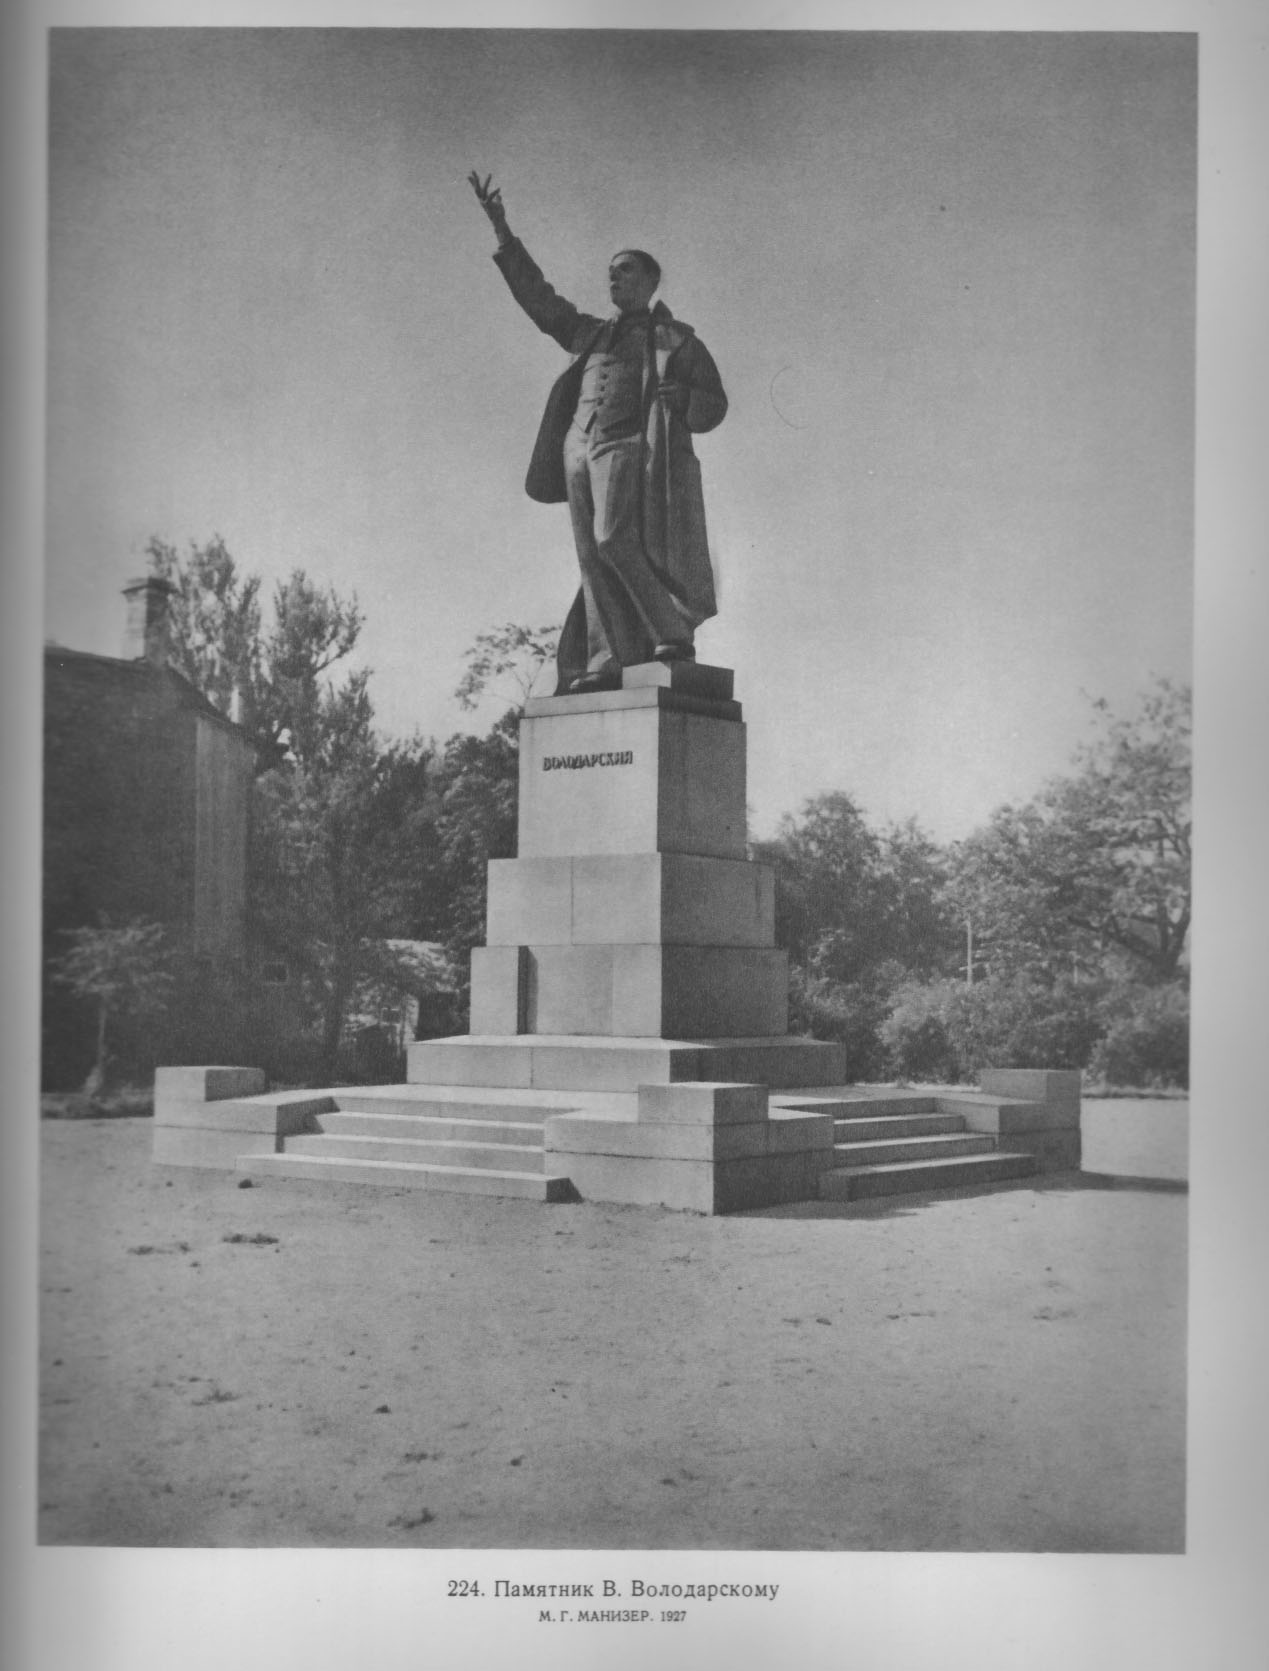 224. Памятник В. Володарскому. М. Г. Манизер. 1927